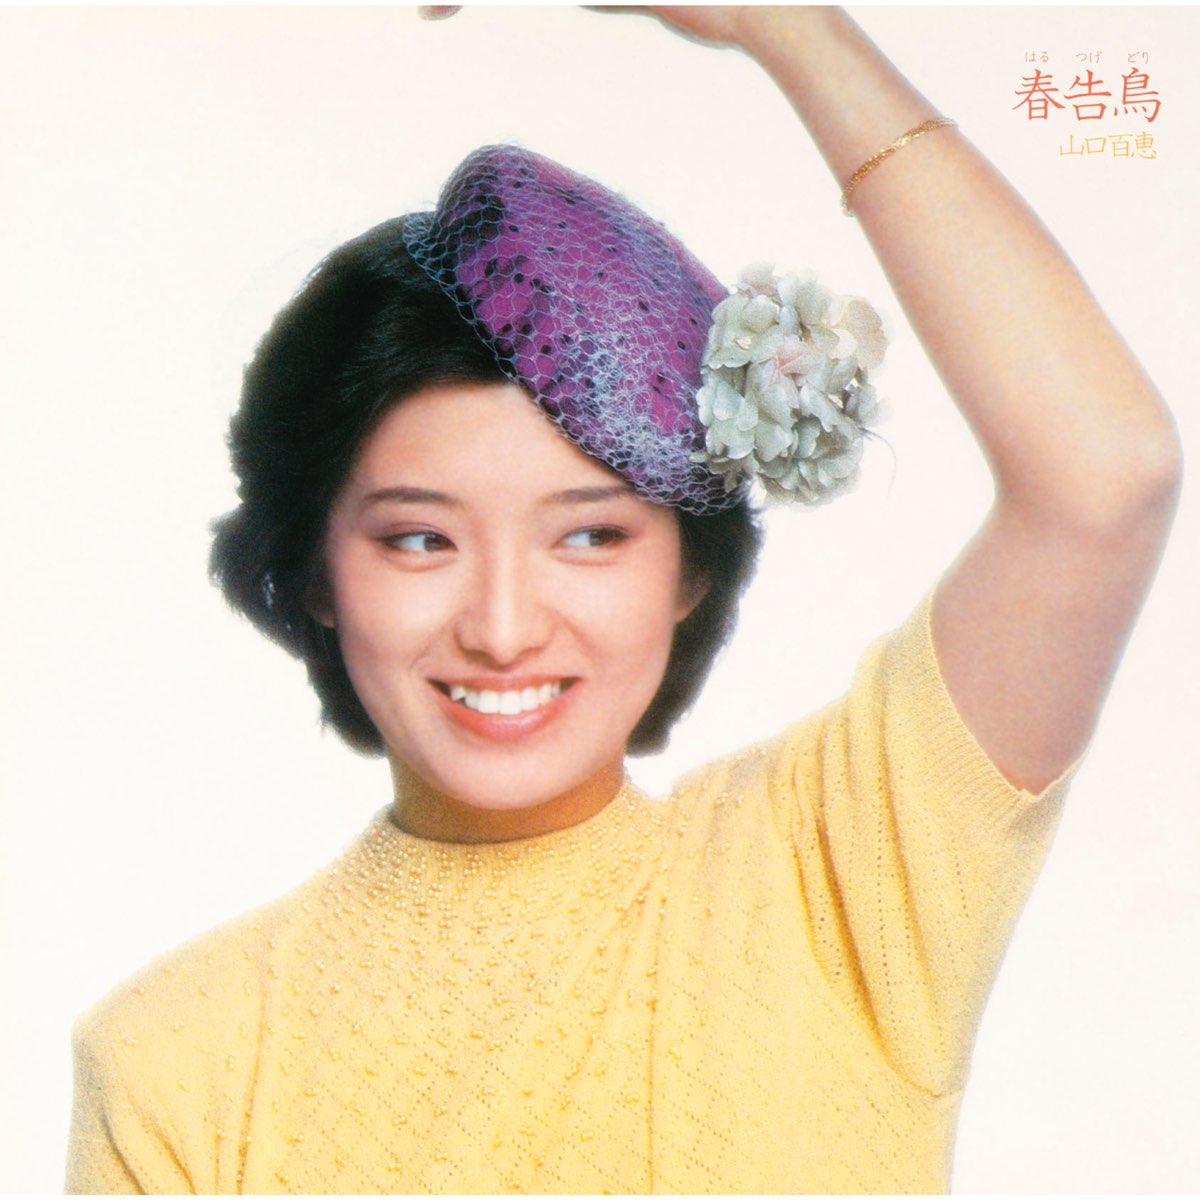 Momoe Yamaguchi - 春告鳥 (1980)